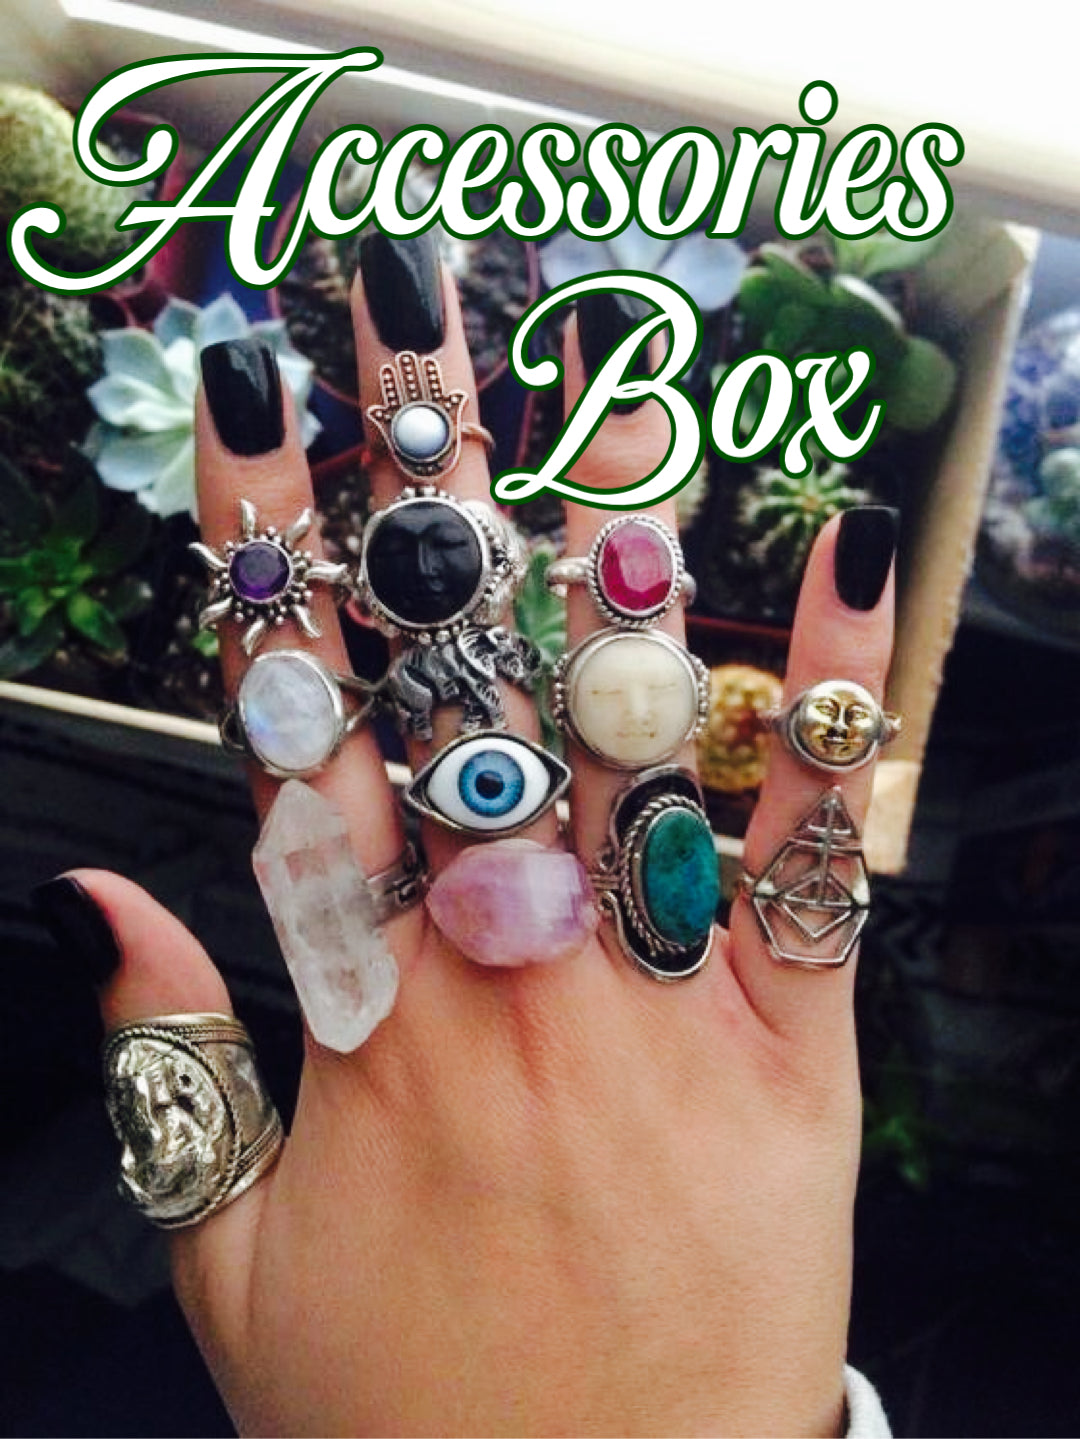 Accessories Sub Box